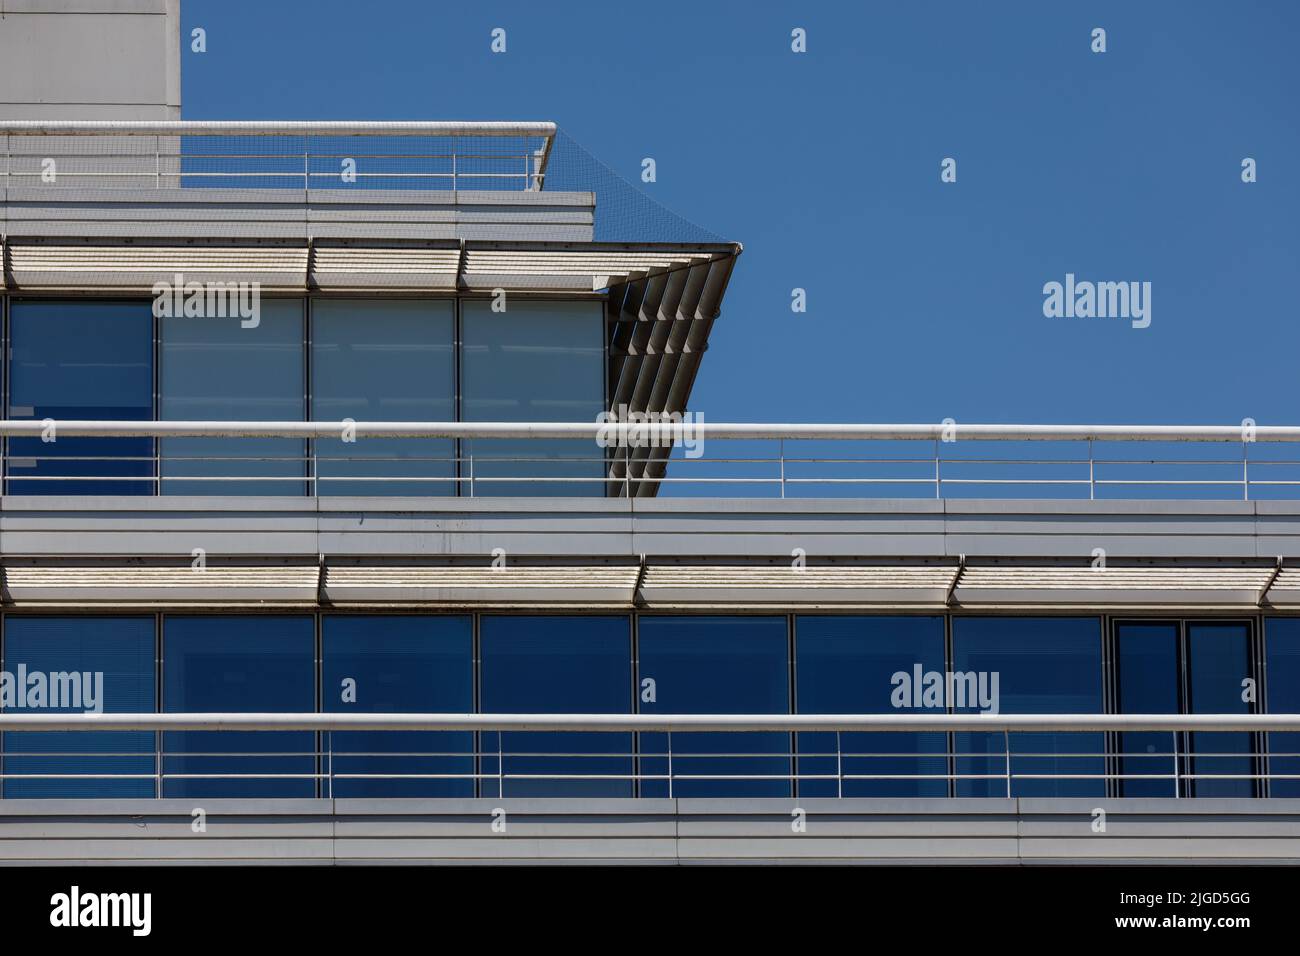 Détail du toit et du dernier étage d'un bâtiment moderne avec des lattes et des garde-corps de pare-soleil horizontaux et des cadres de fenêtre verticaux contre bleu clair sk Banque D'Images